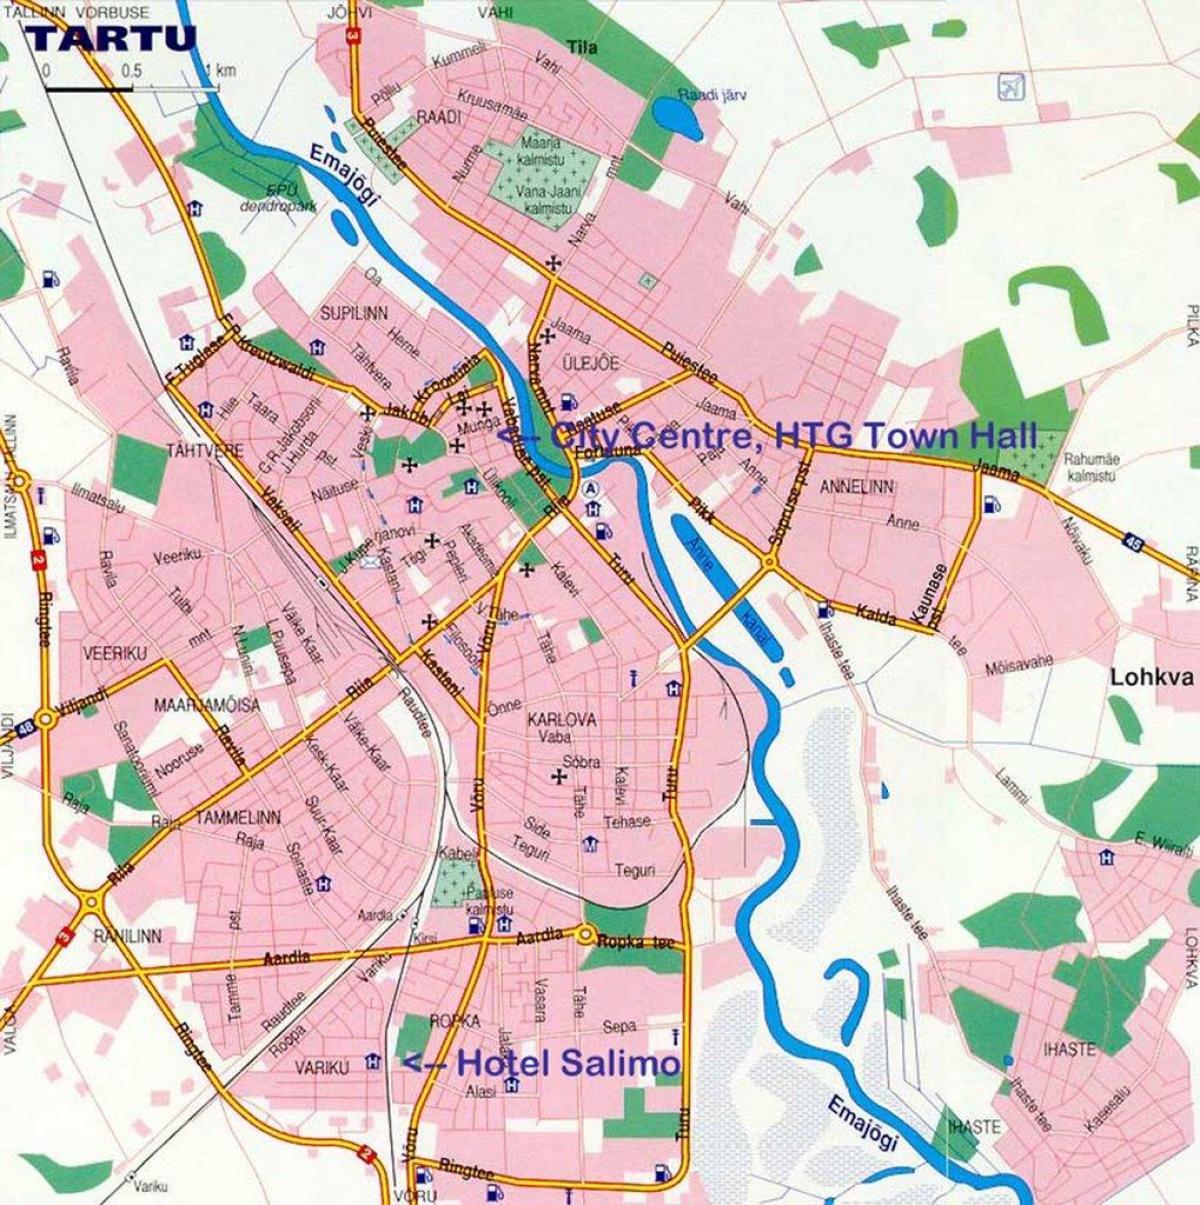 mapa de tartu, Estonia